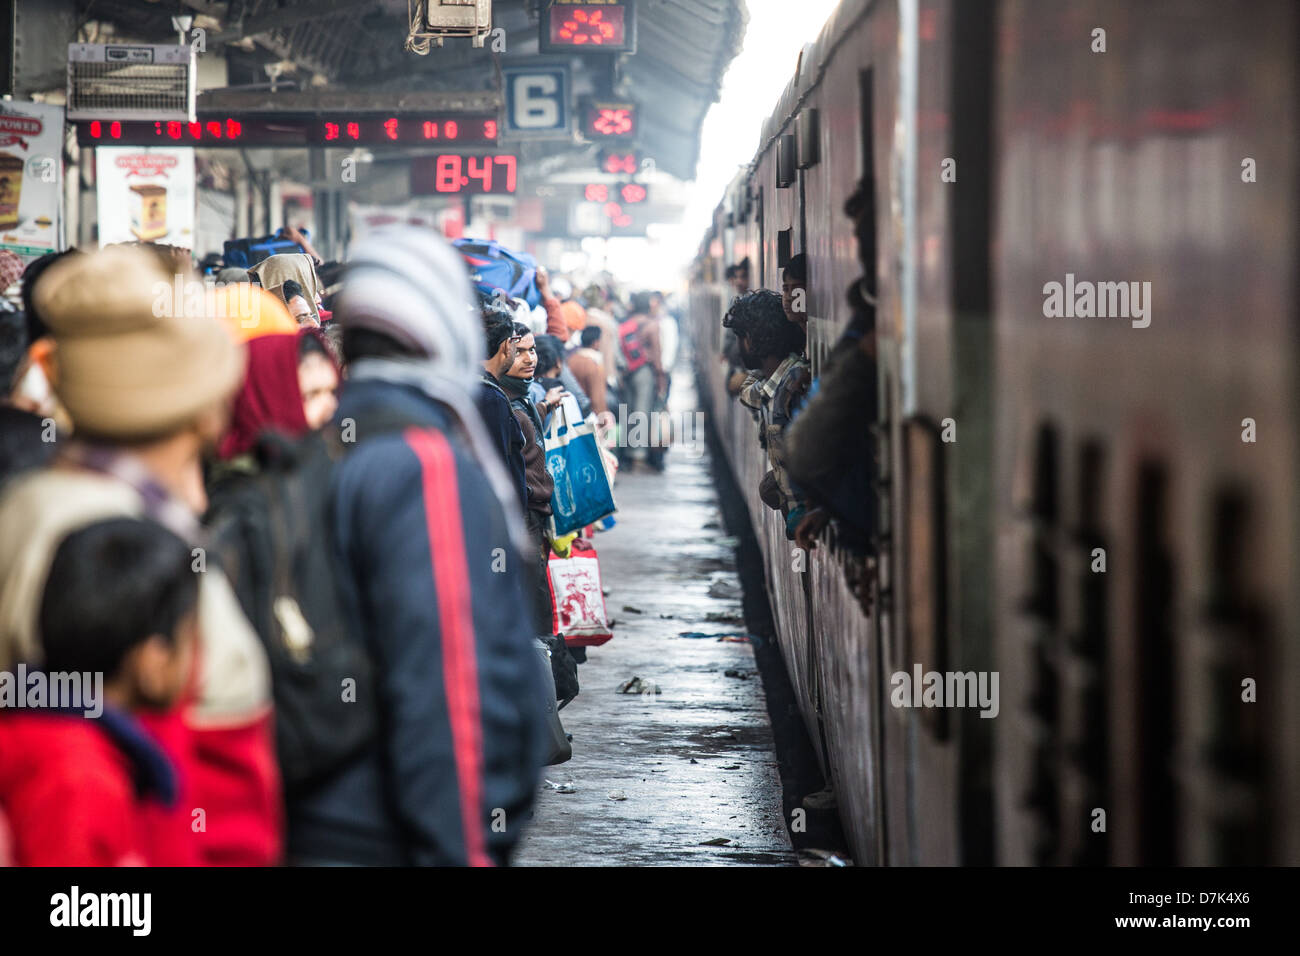 Allahabad railway station, Allahabad, India Stock Photo